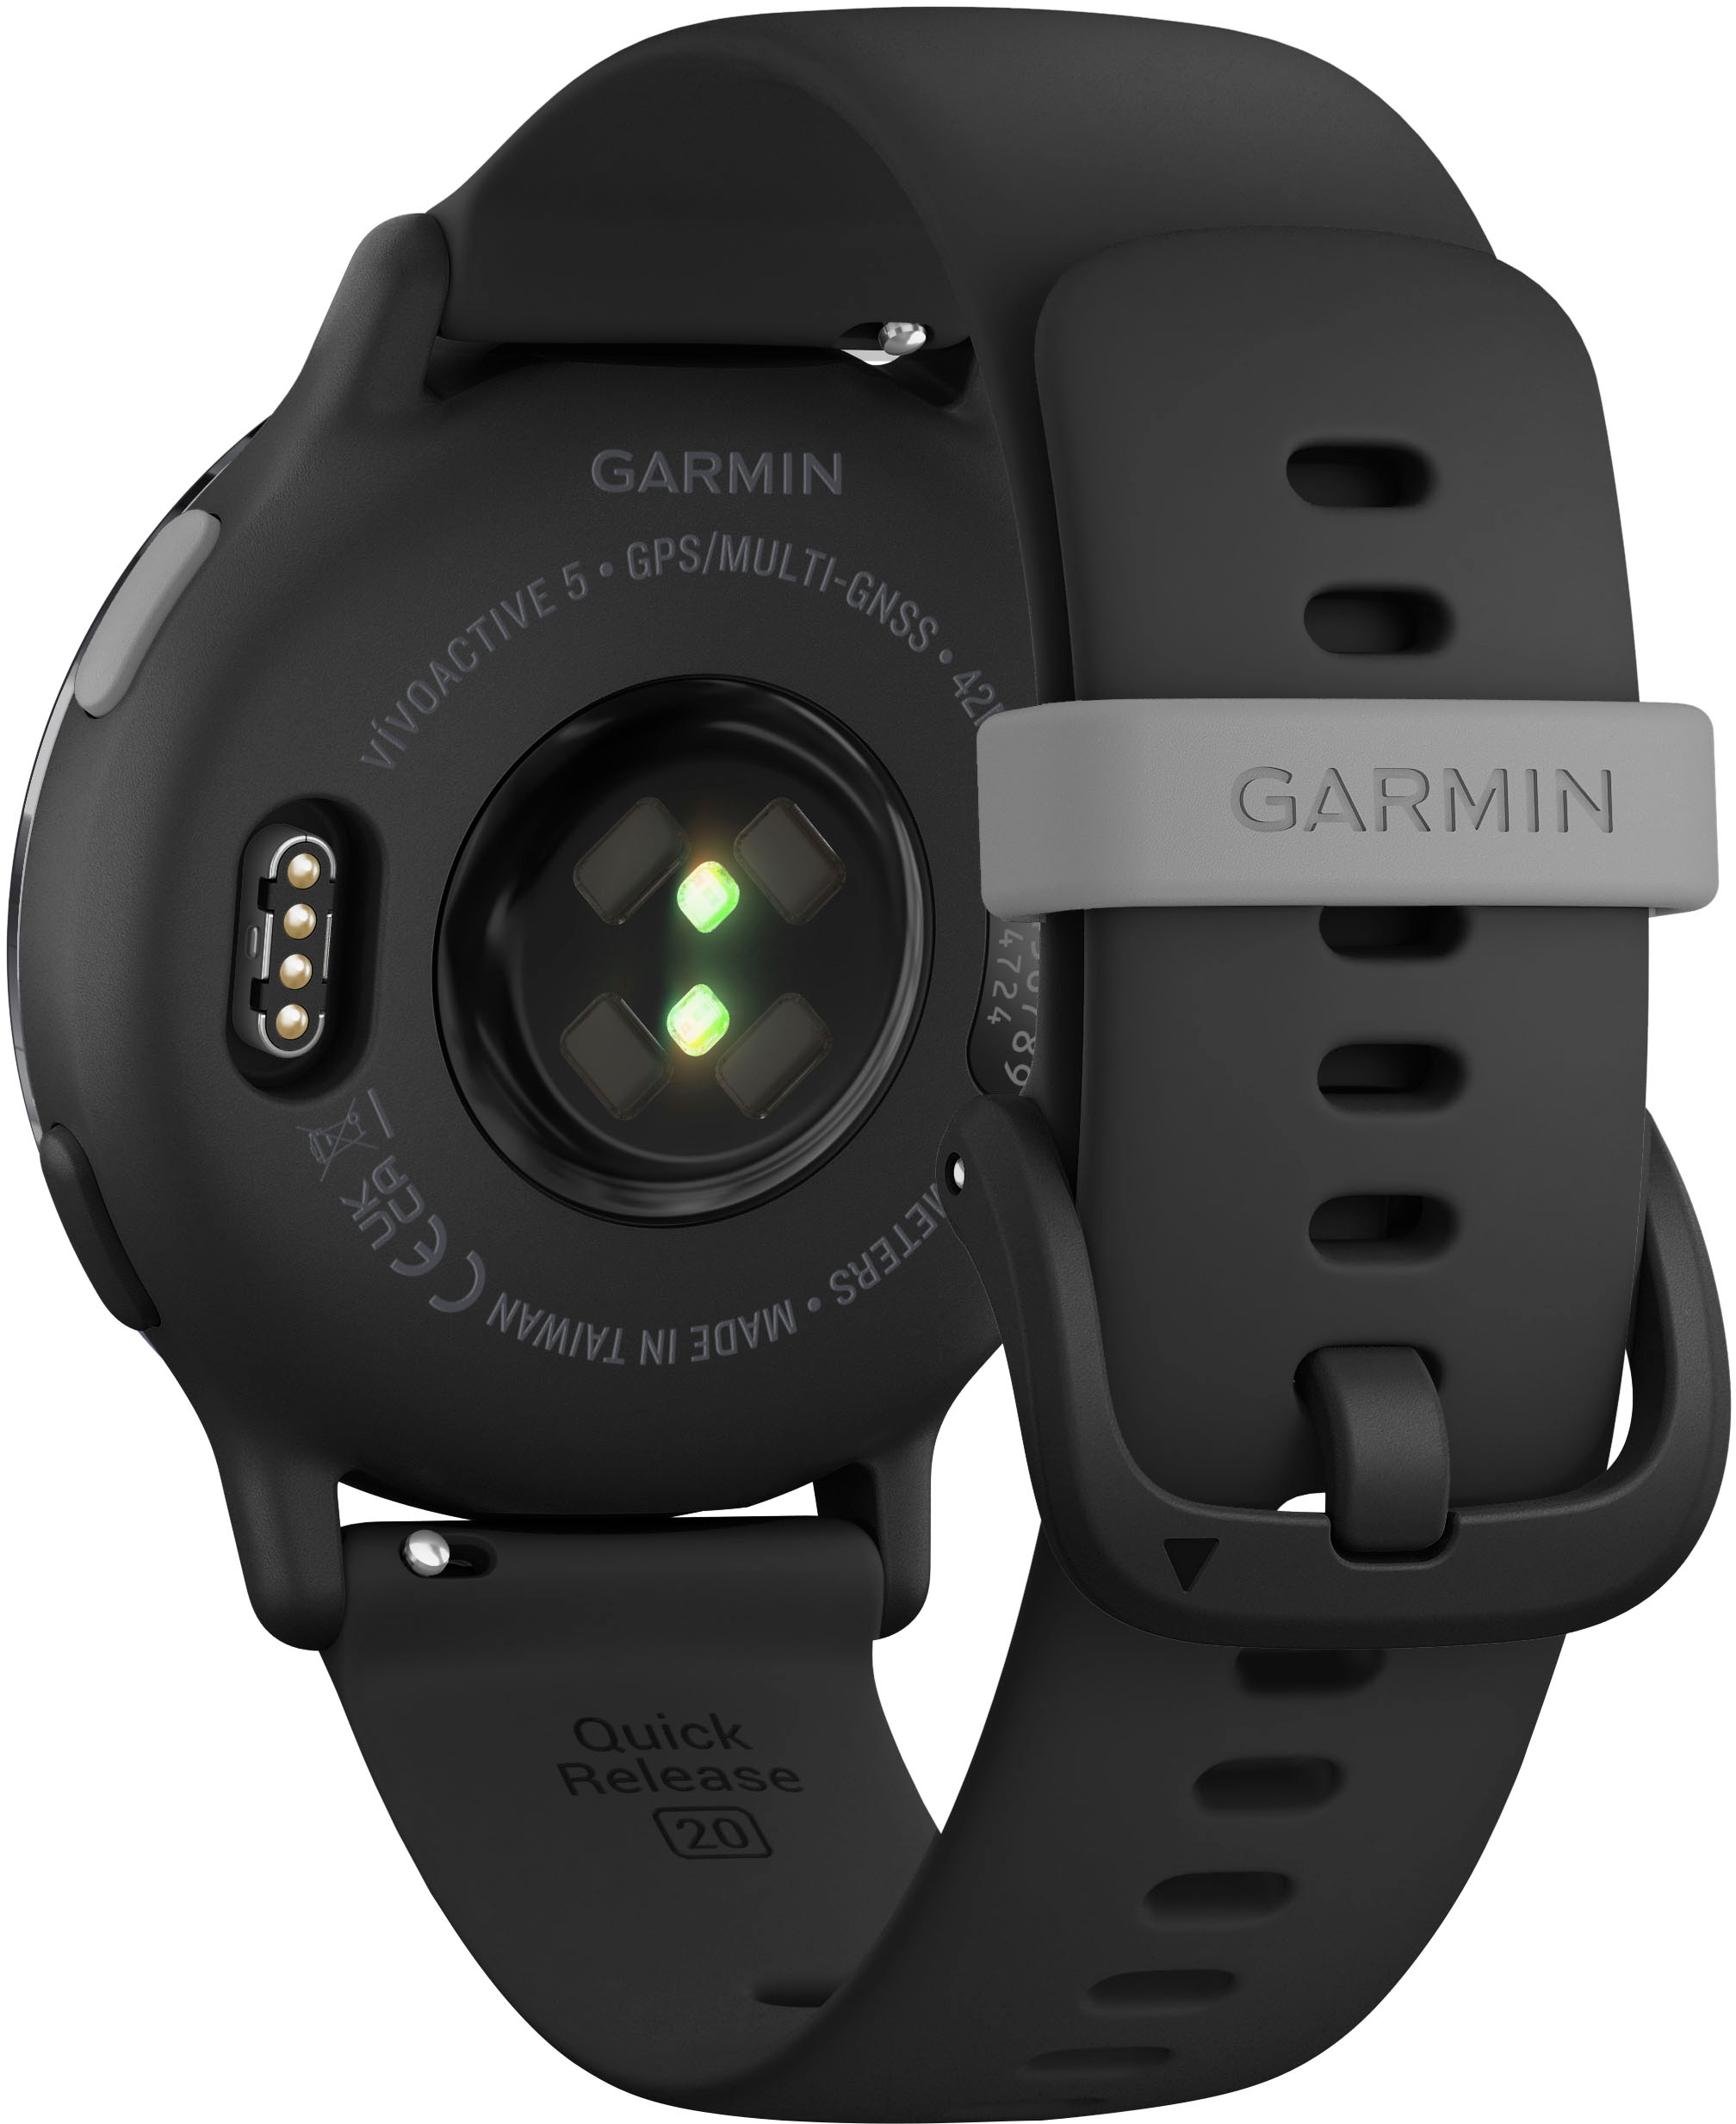 Garmin Vivoactive 5 review